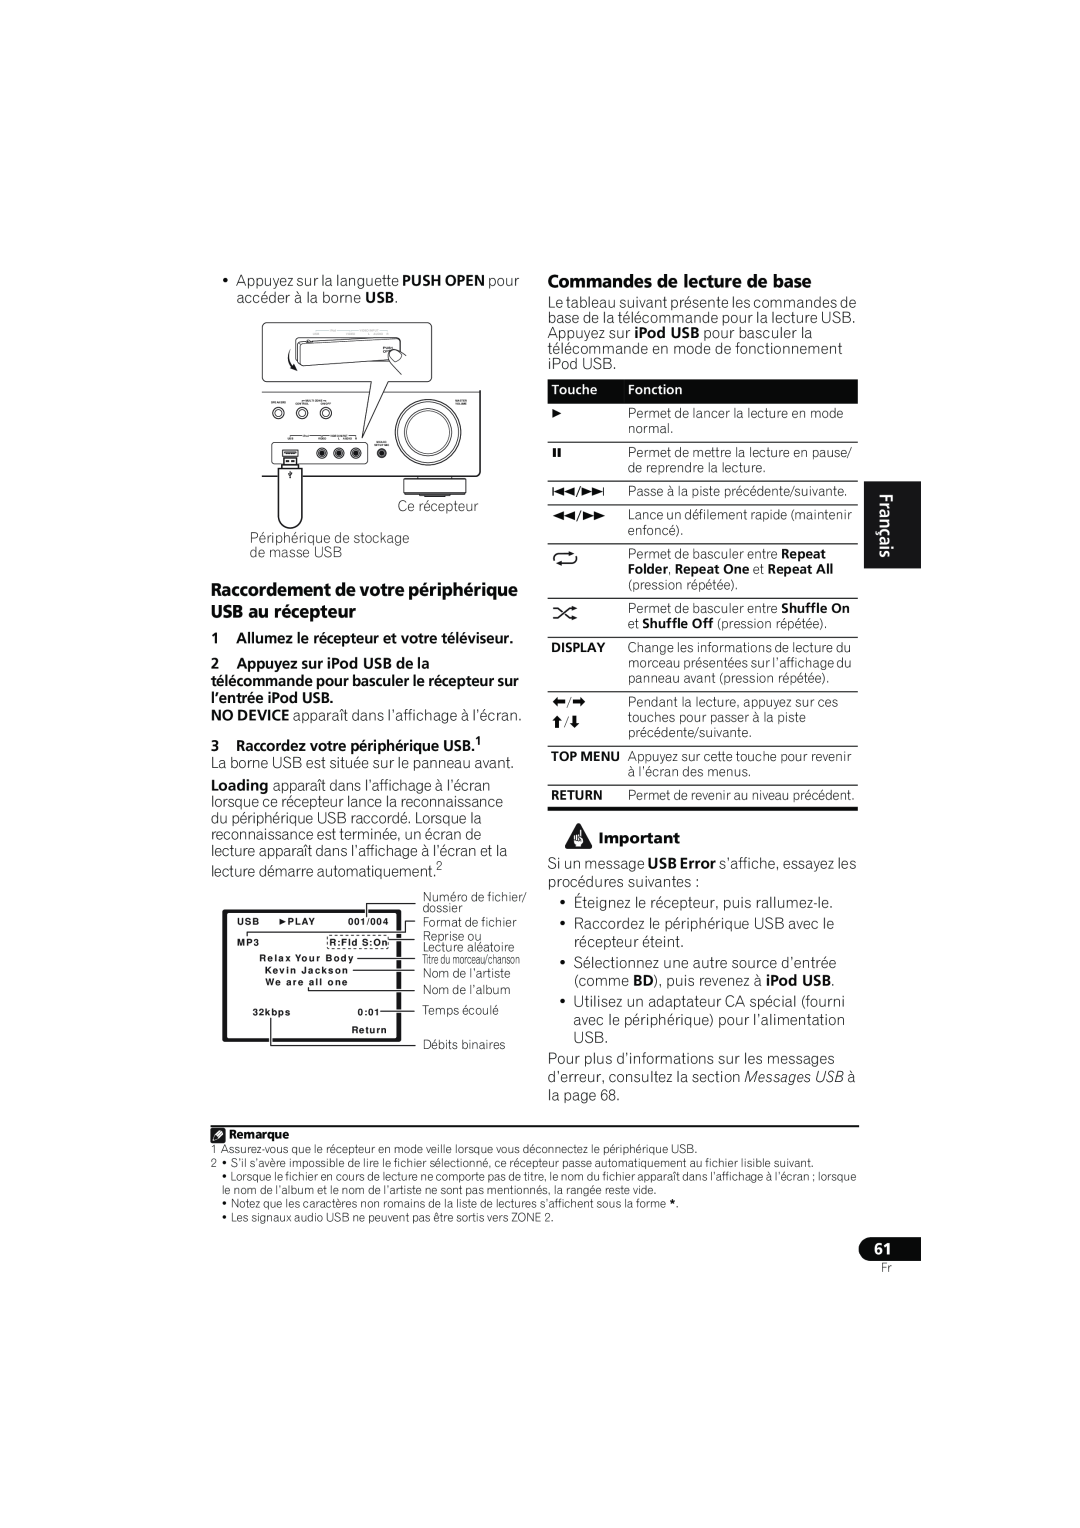 Pioneer VSX-819H-K manual Commandes de lecture de base, Périphérique de stockage de masse USB, English Français Español 